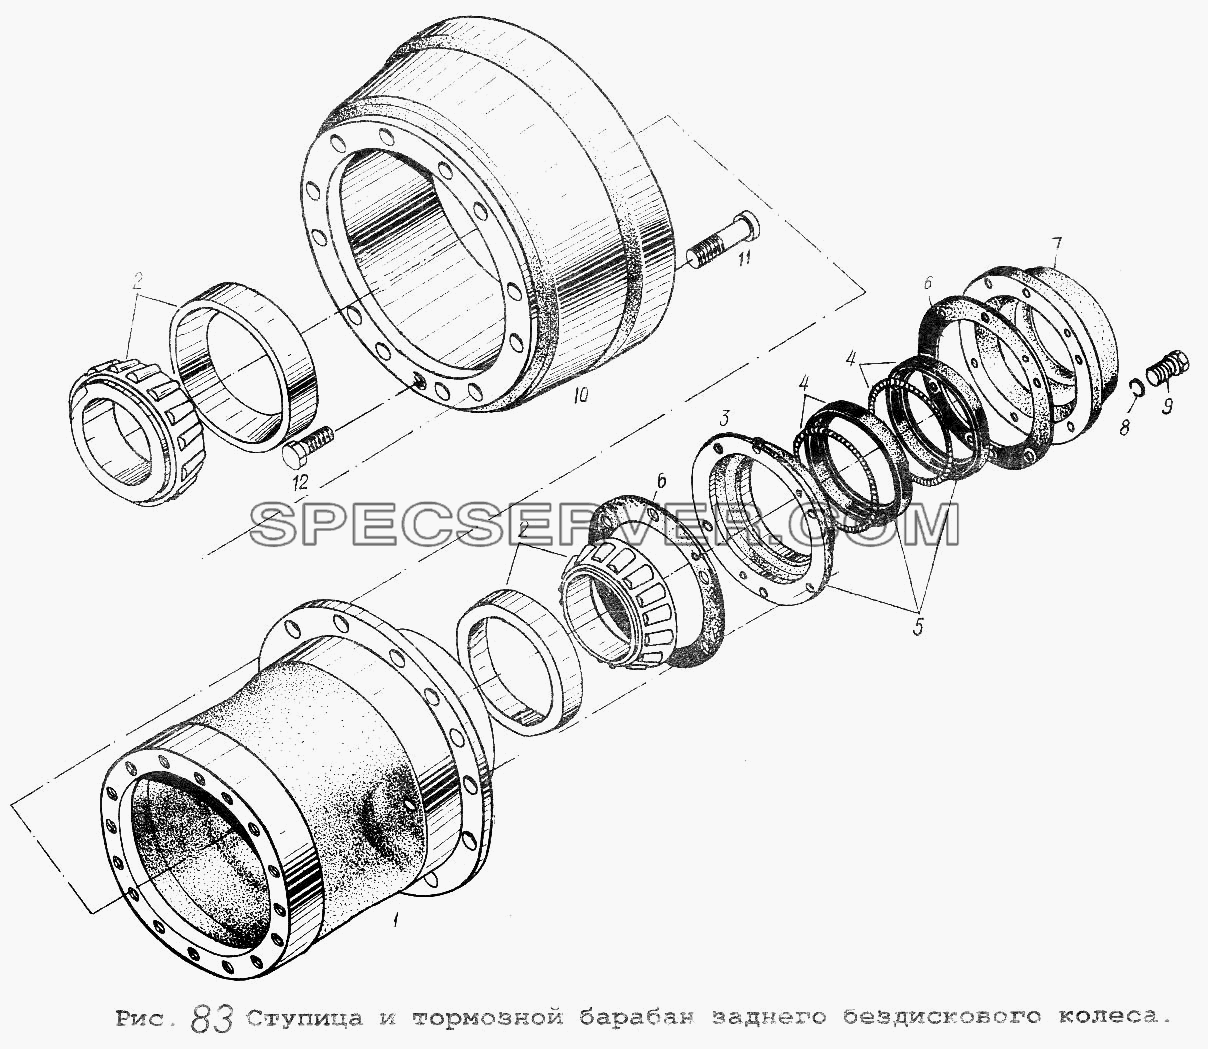 Ступица и тормозной барабан заднего бездискового колеса для МАЗ-64229 (список запасных частей)